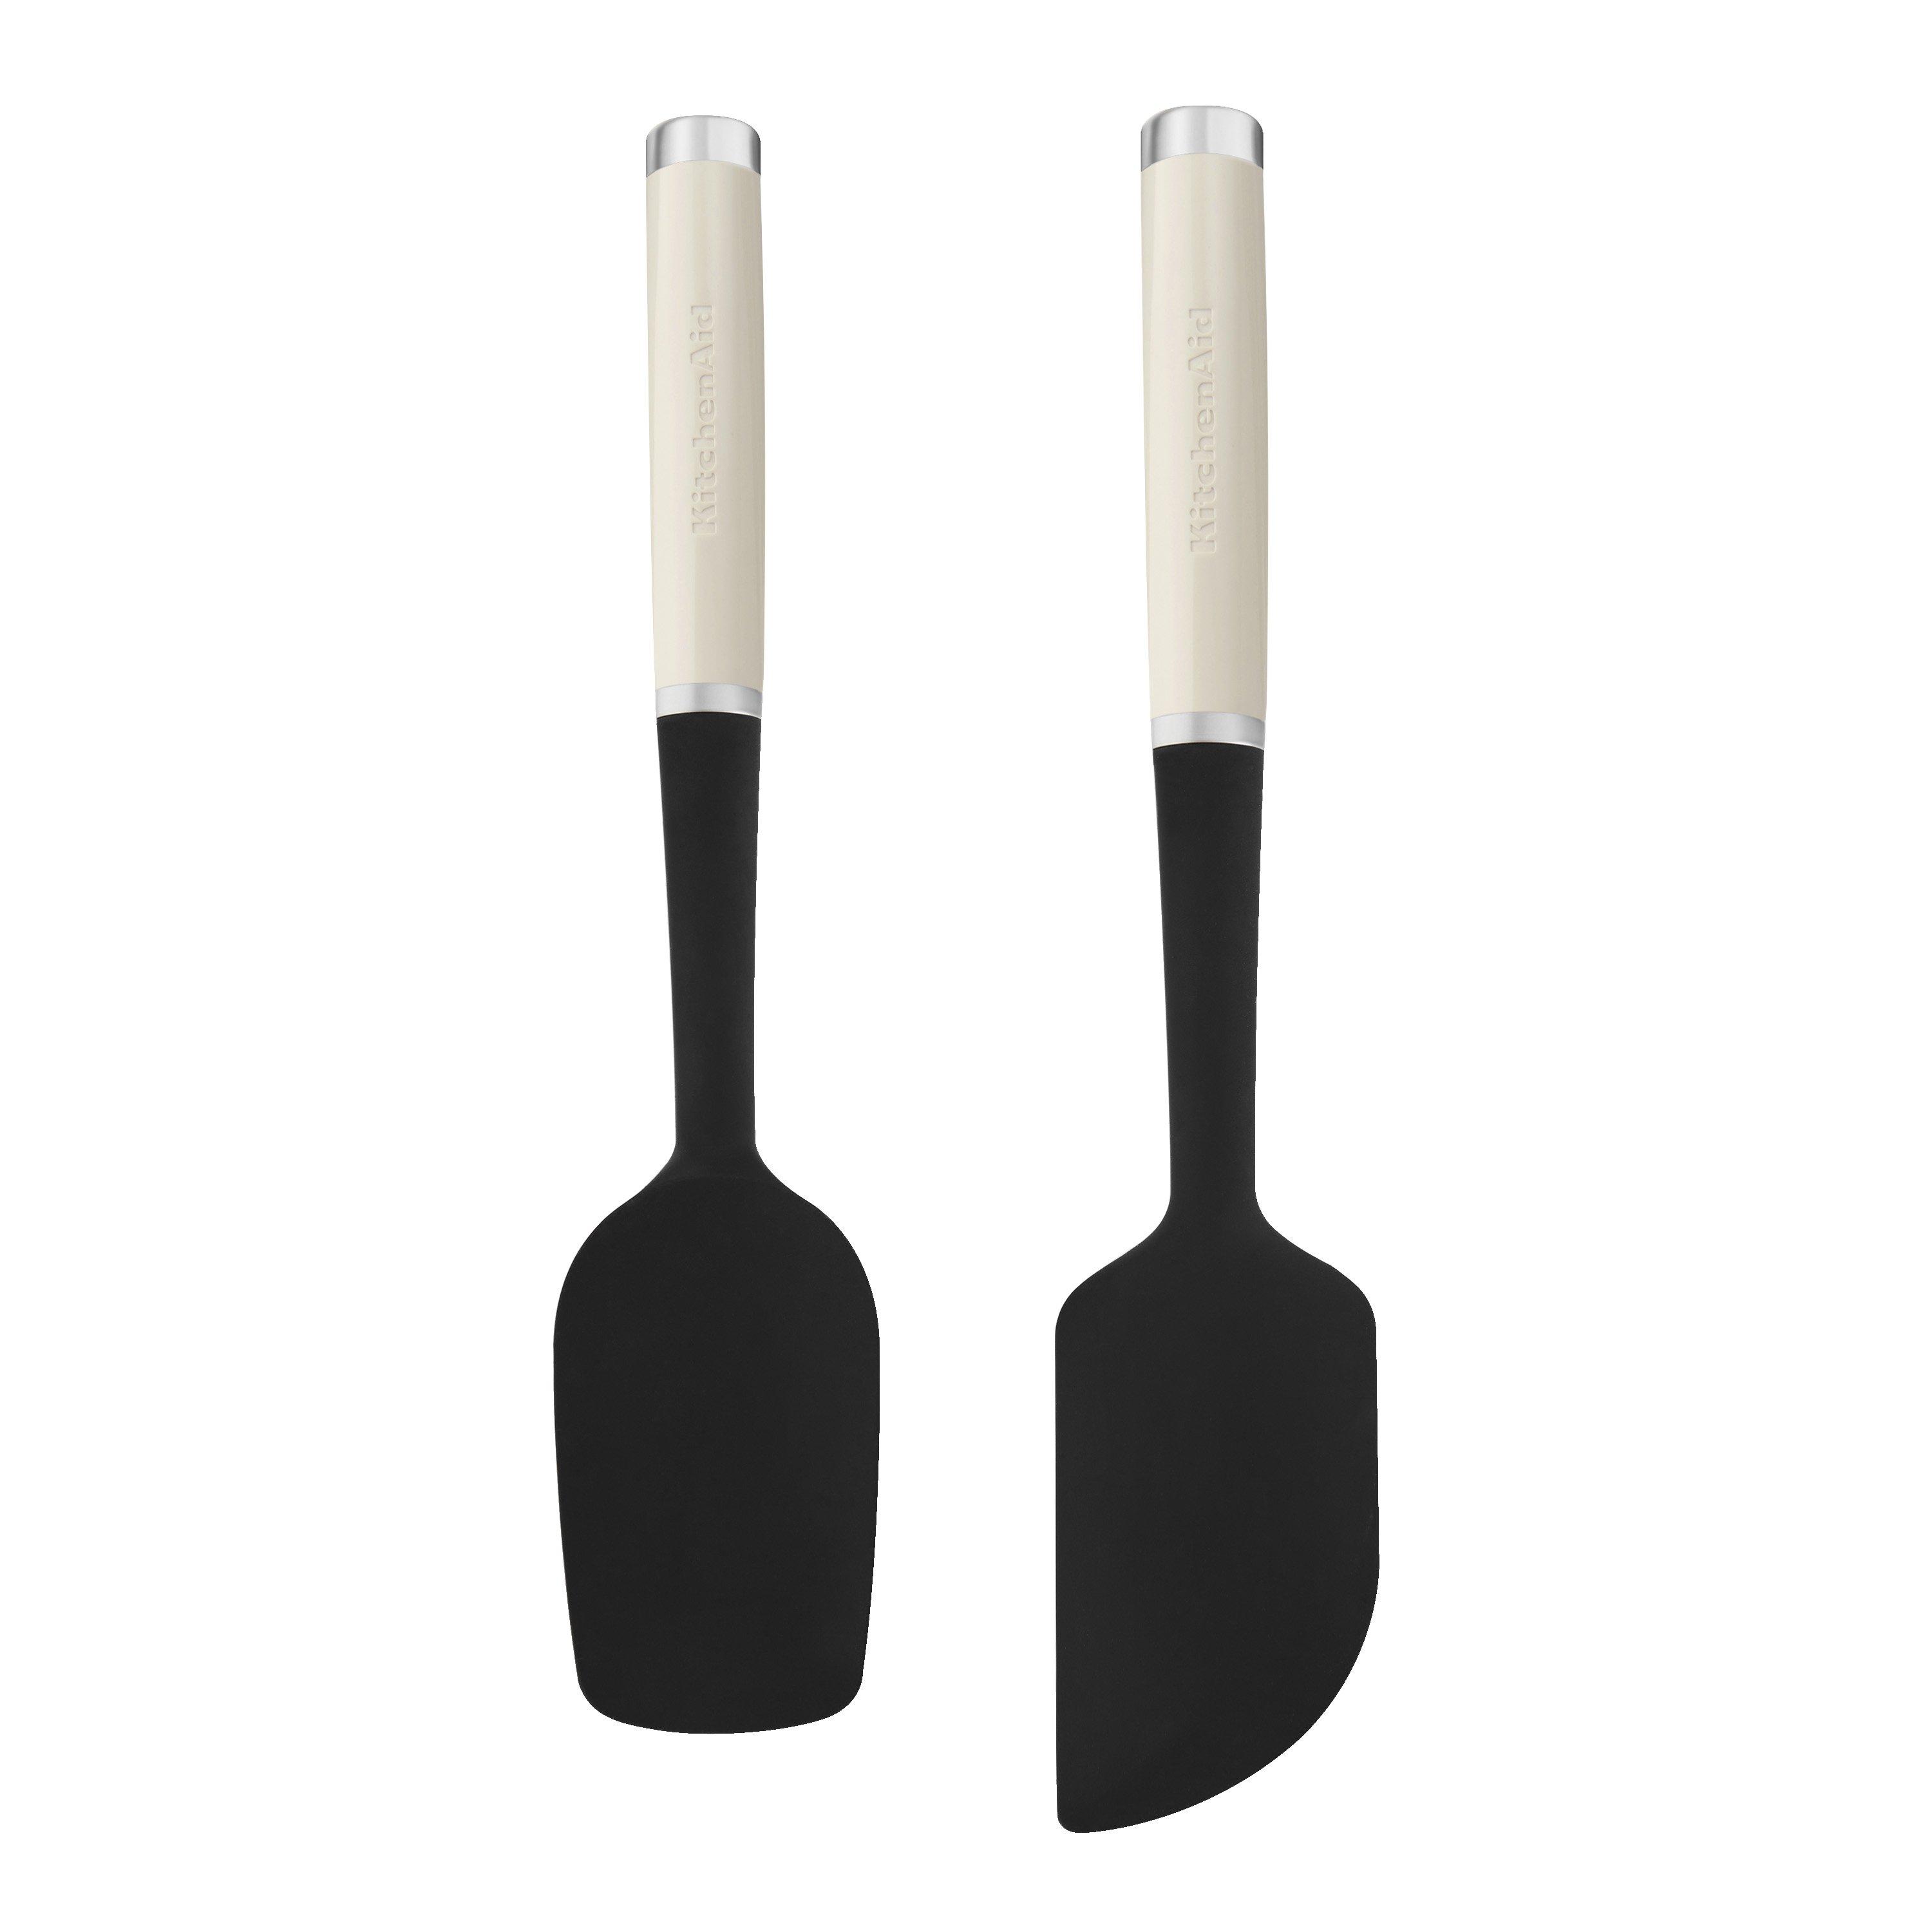 2pc silicone spatula set - almond cream